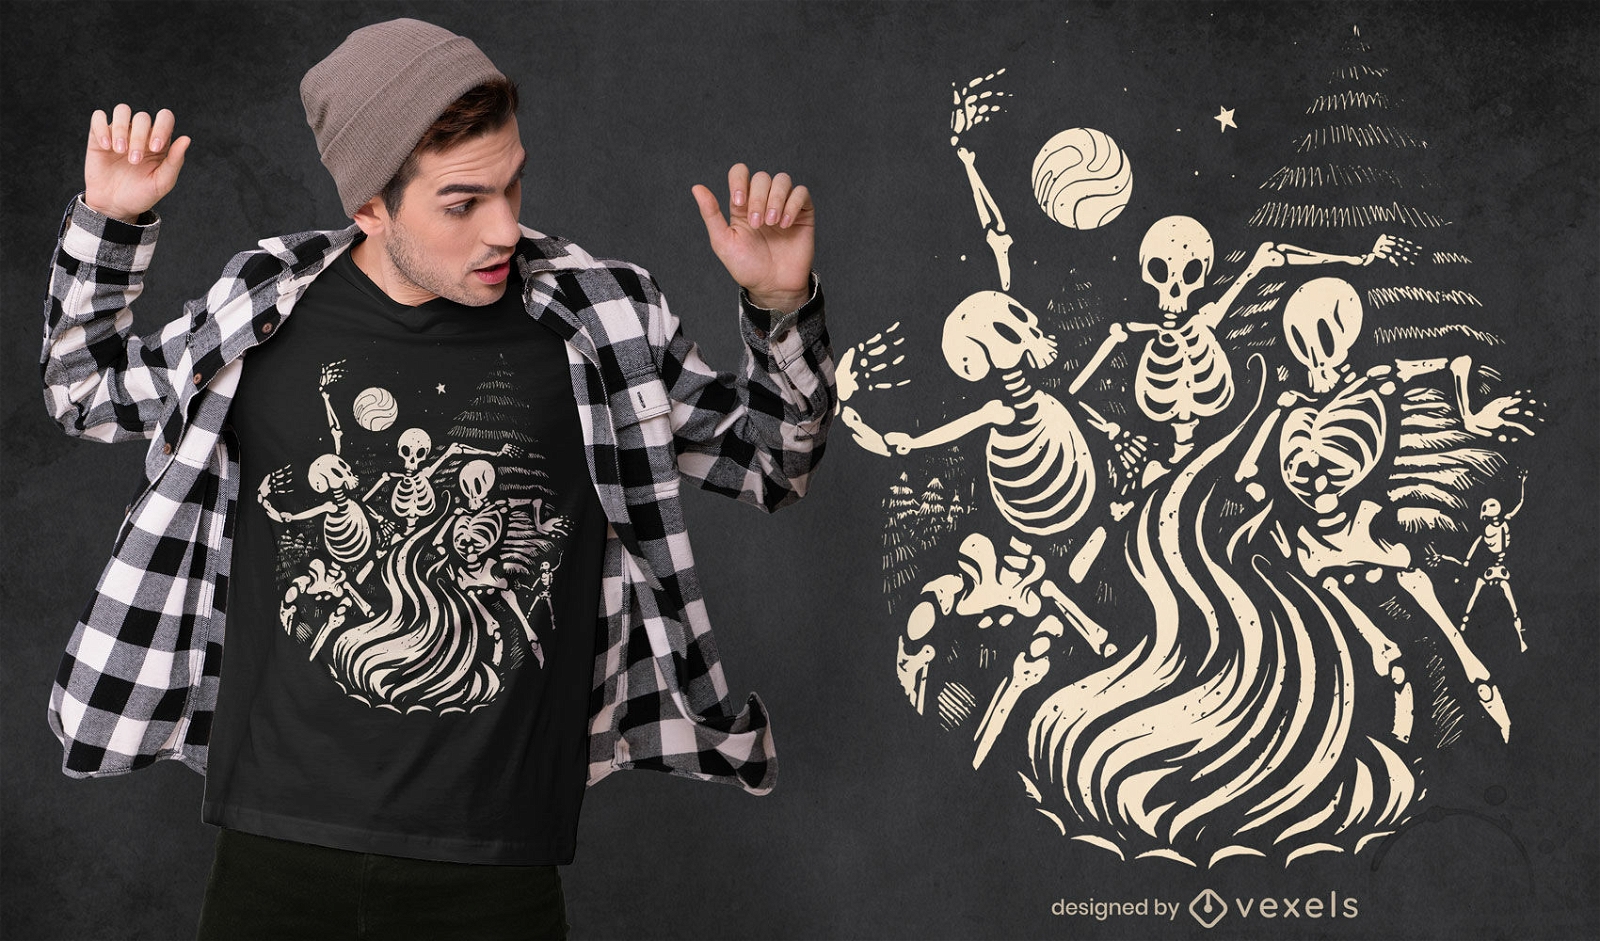 Skeletons dancing on bonfire t-shirt design